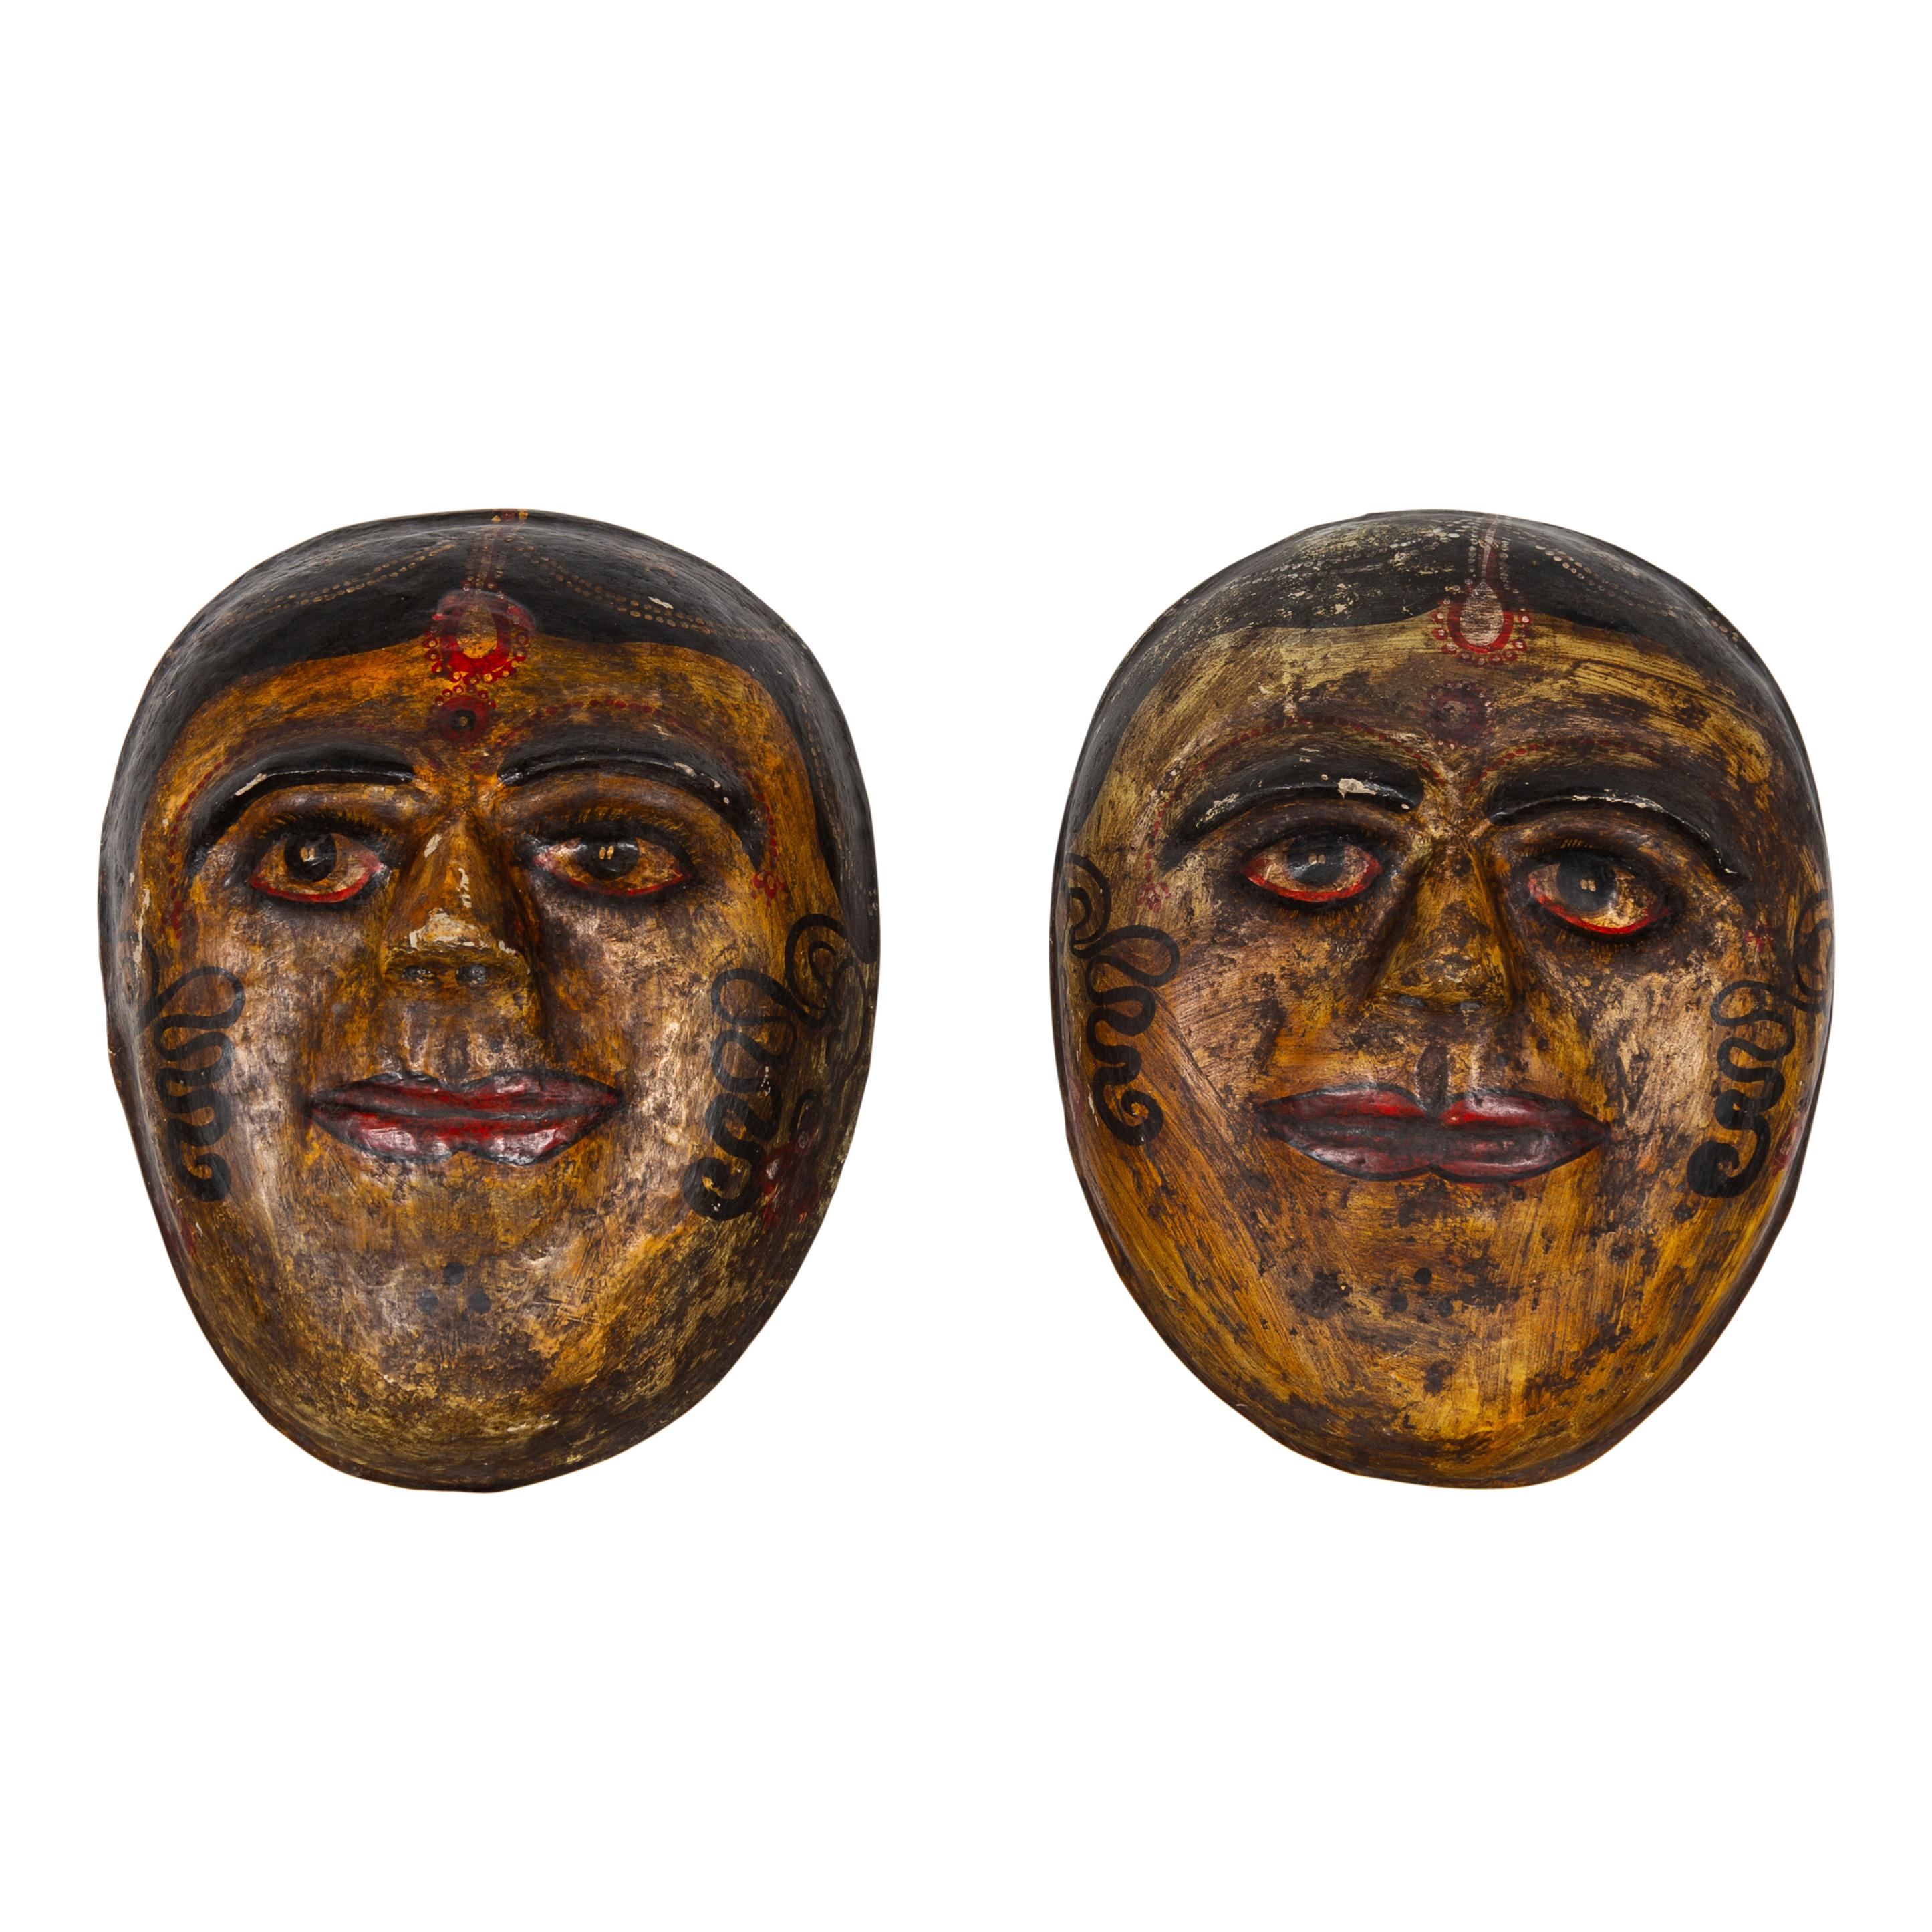 Two Antique Indian Papier-Mâché Hand Painted Face Masks Depicting Brides